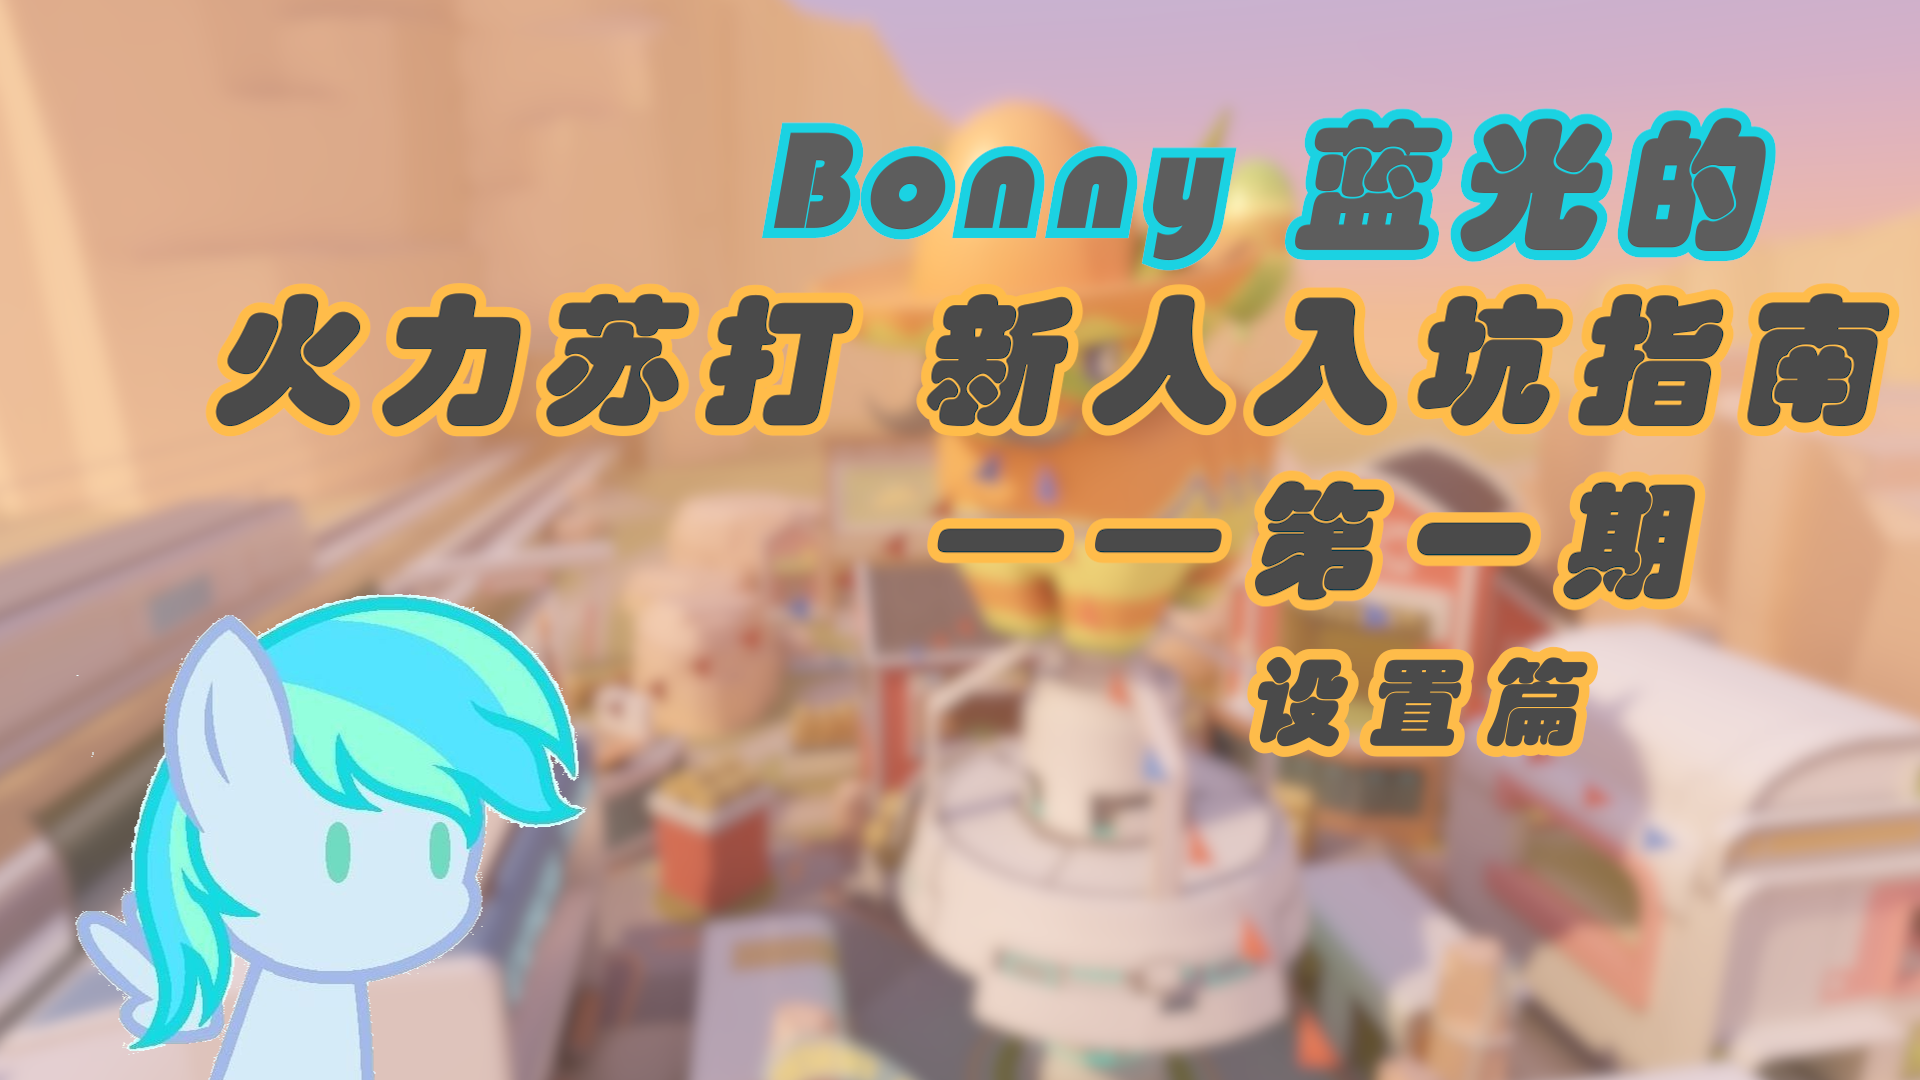 【游戏指南/火力苏打】Bonny蓝光的 火力苏打新人入坑指南 第一期 设置篇